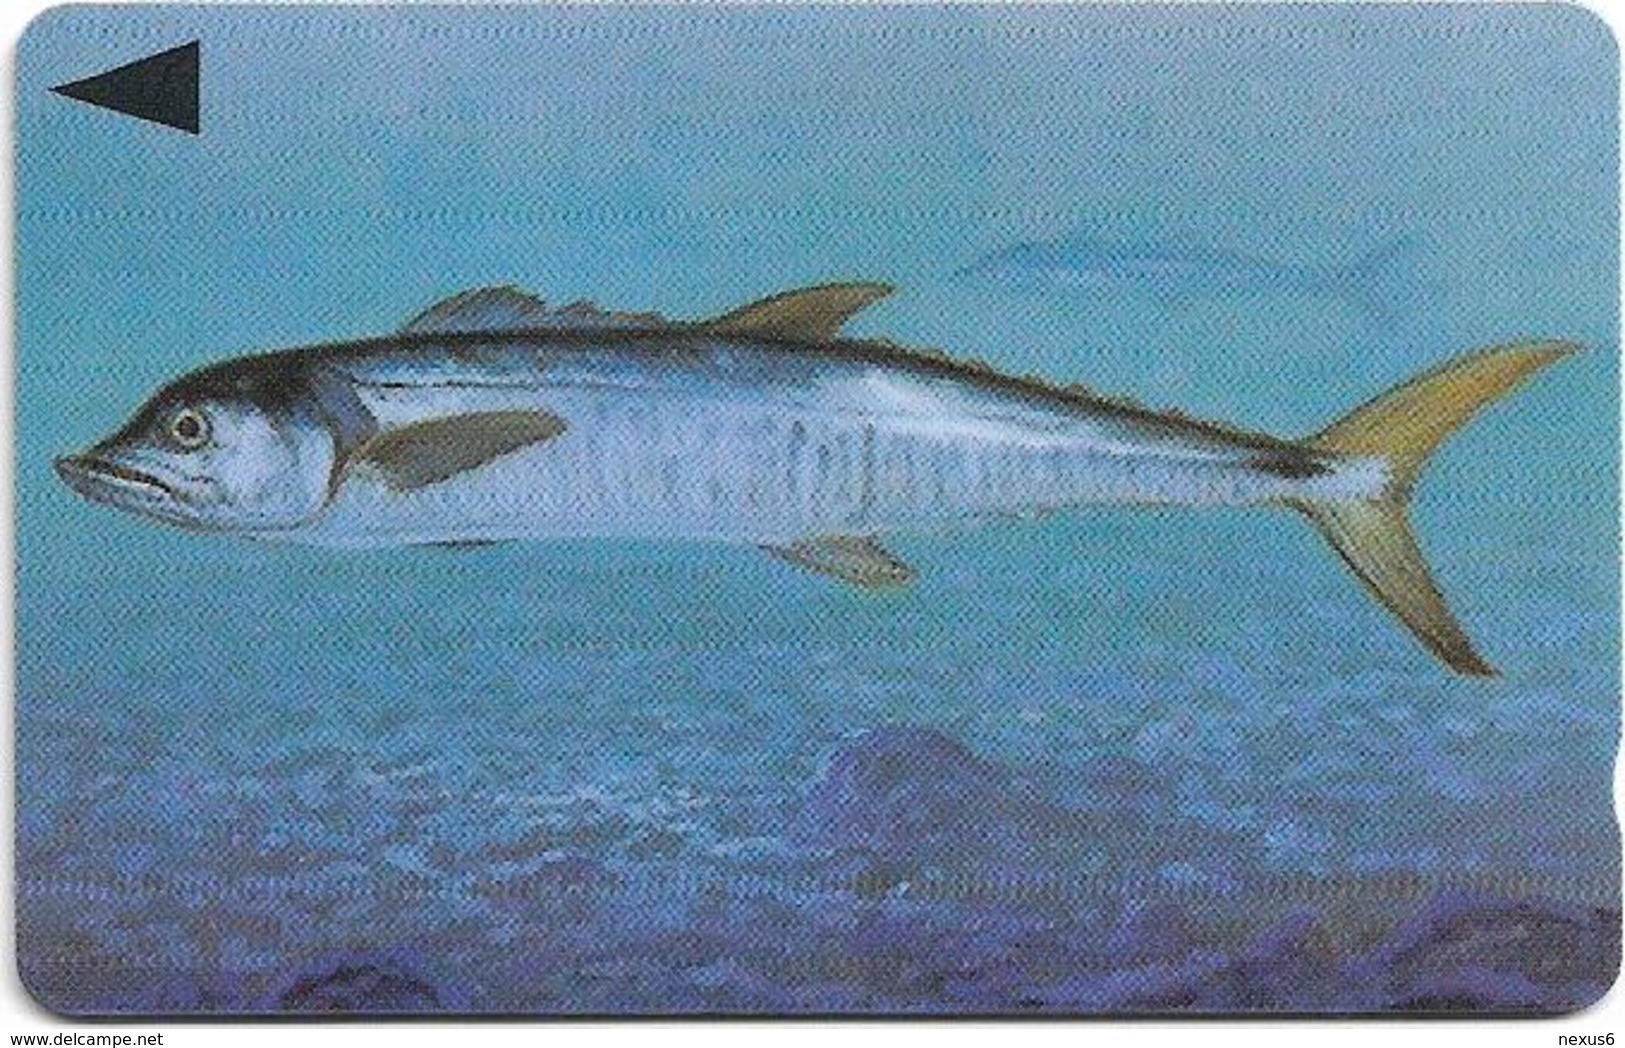 Bahrain - Fish Of Bahrain - Spanish Mackerel - 40BAHH (0) - 1996, Used - Bahrain